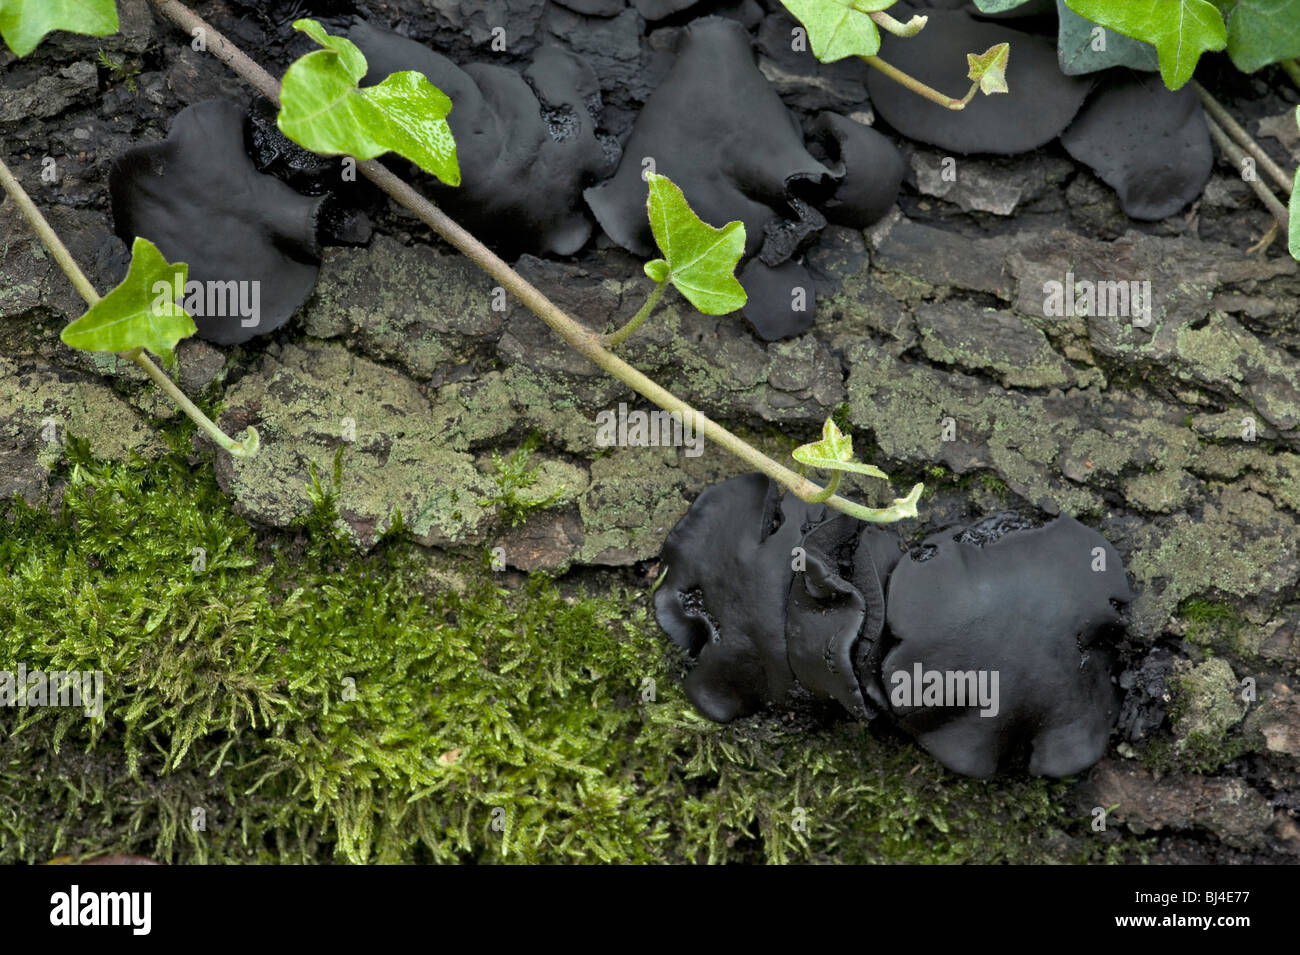 Boutons en caoutchouc noir ou bulgare, la Bulgarie inquinans, de lierre sur log Banque D'Images